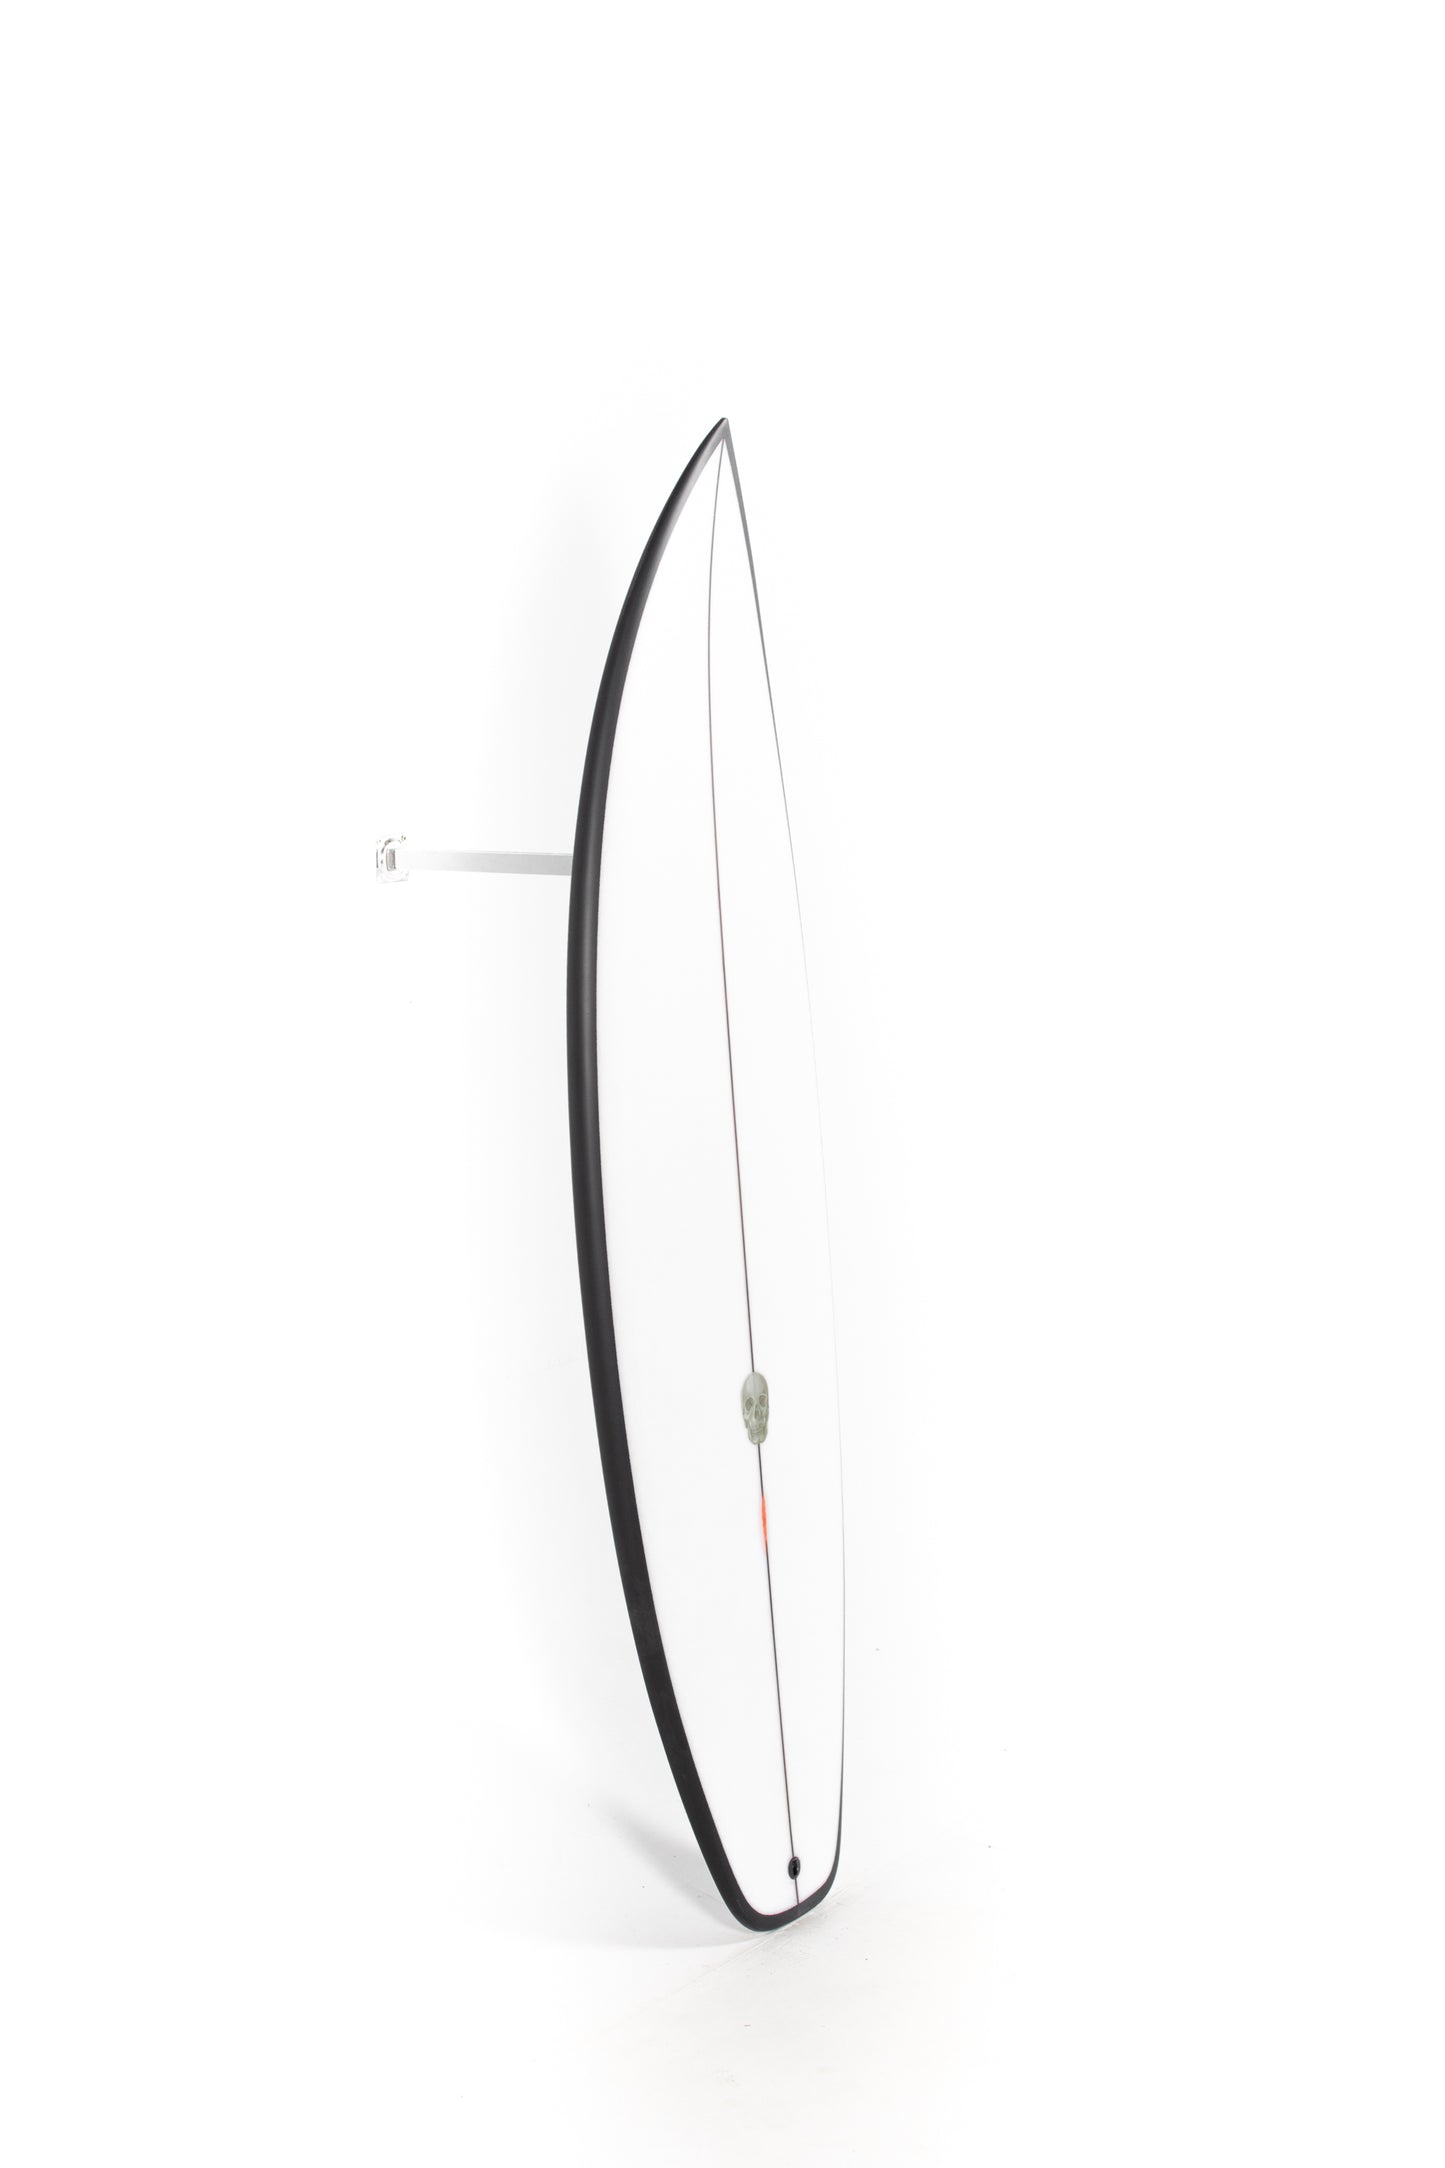 
                  
                    Pukas Surf Shop - Christenson Surfboards - OP2 - 5'9" x 19 3/8 x 2 3/8 x 28.26L - CX04806
                  
                